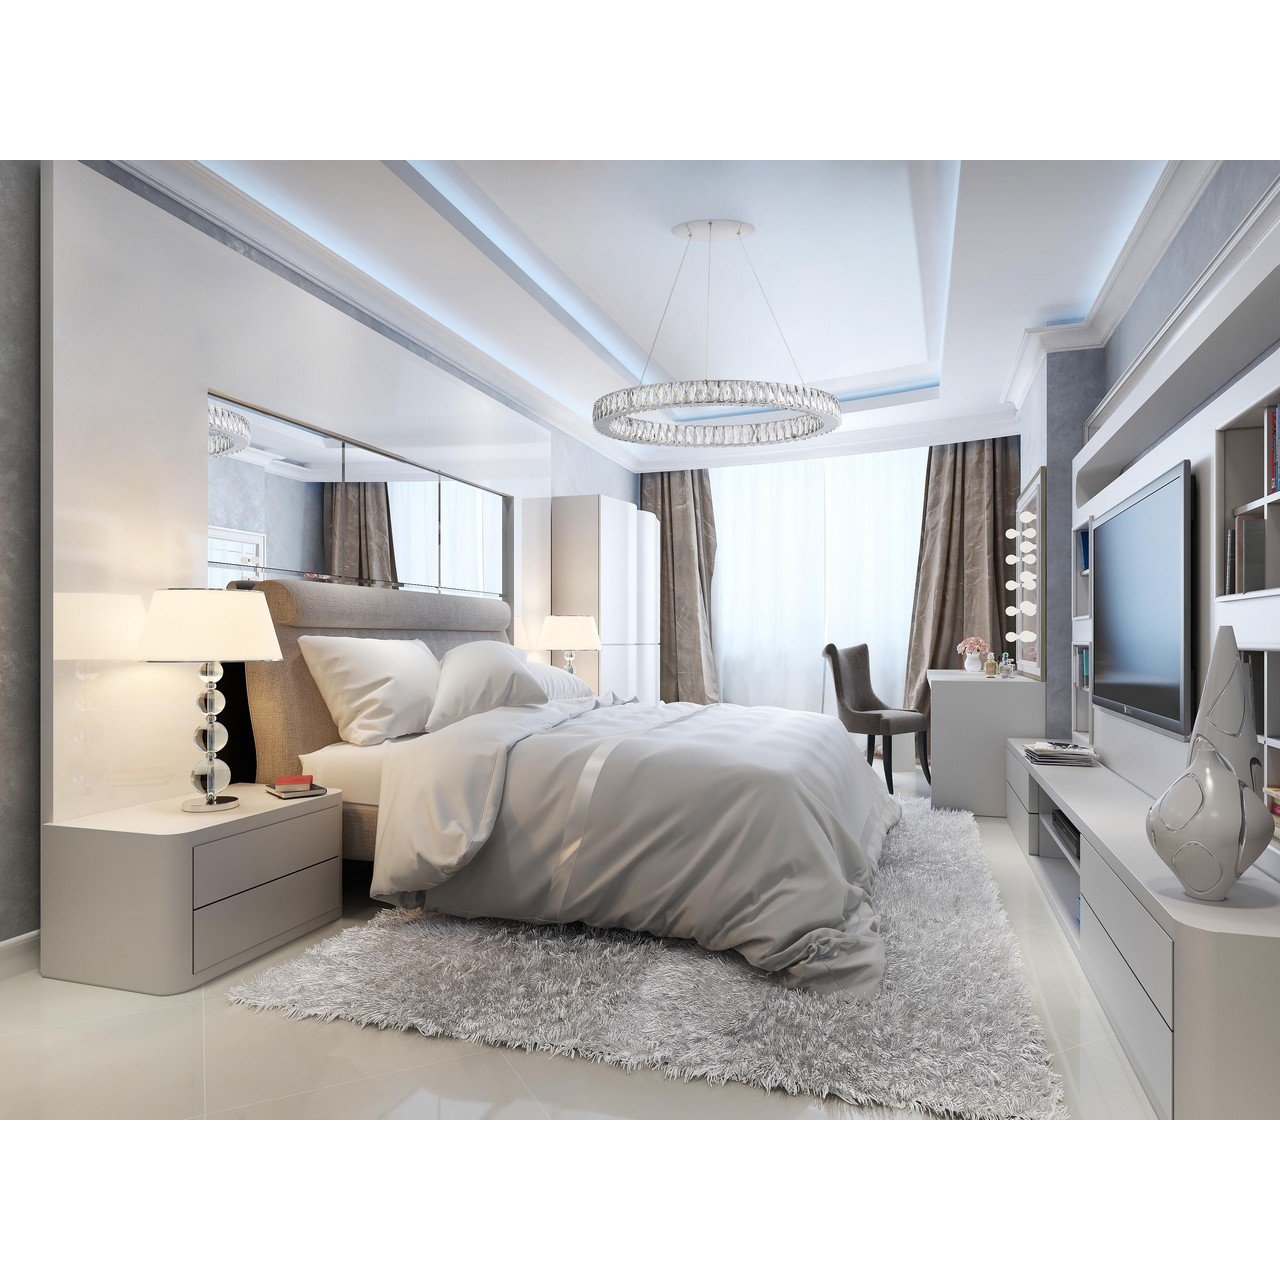 Дизайн освещения в спальне - 7 интерьерных стилей 7